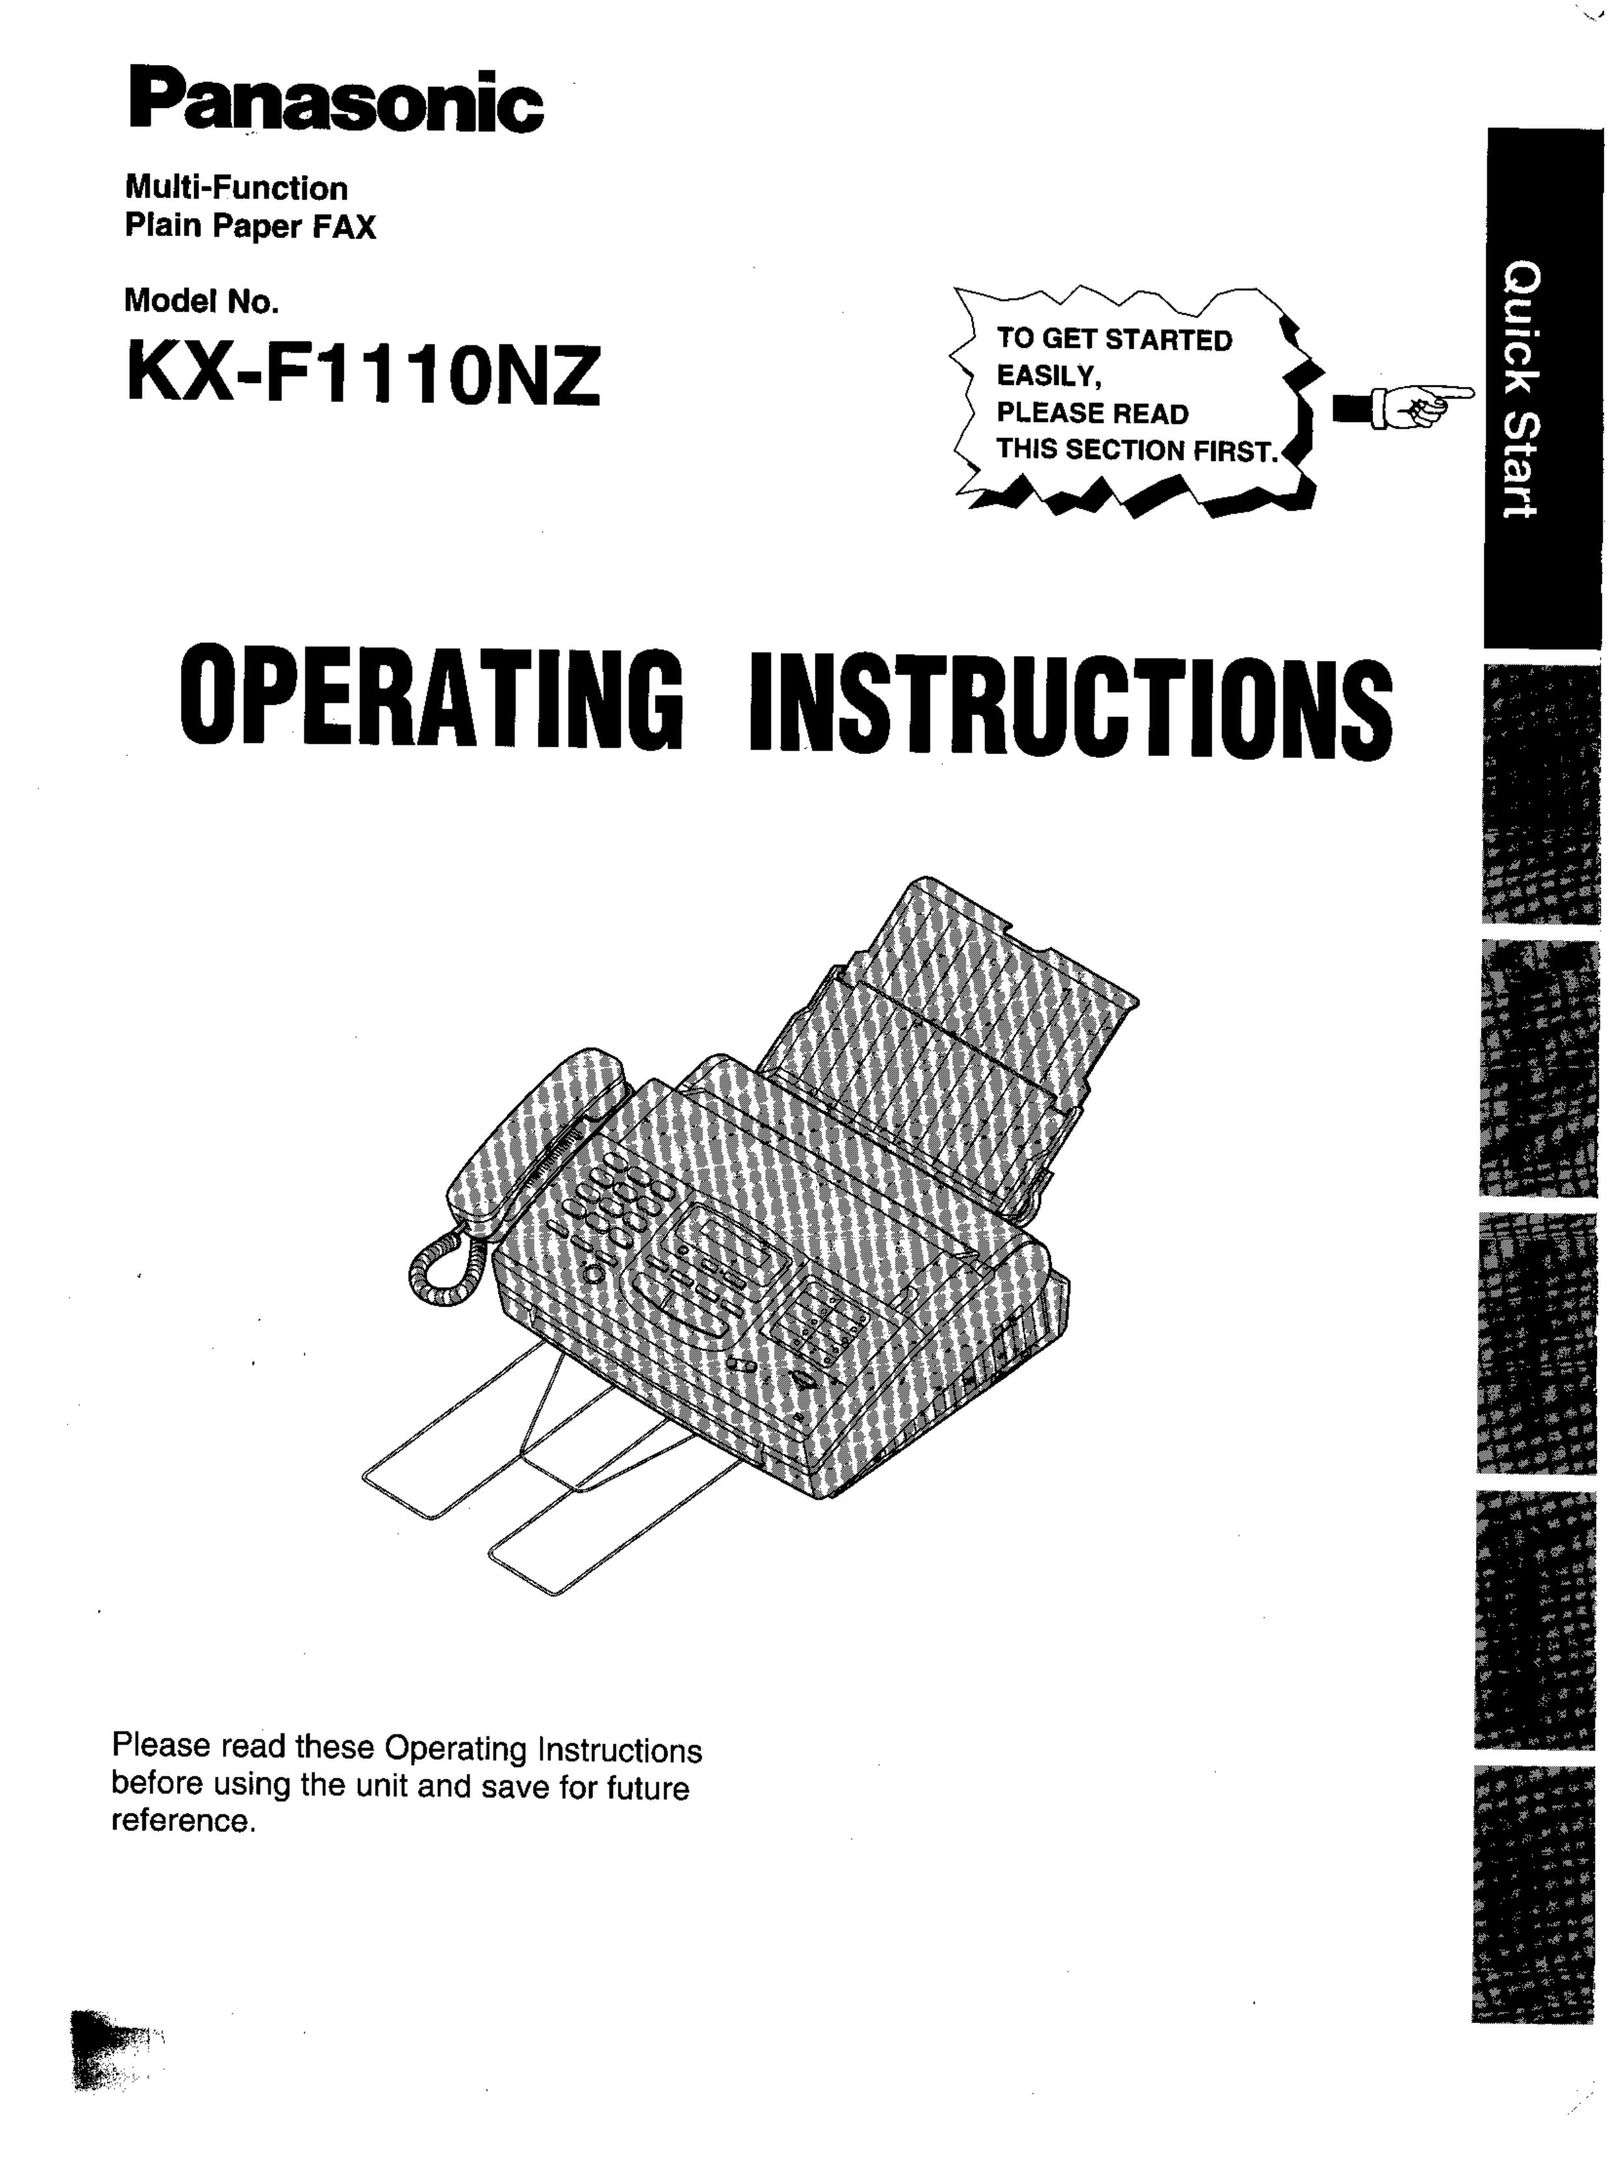 Panasonic KX-F1110NZ Fax Machine User Manual